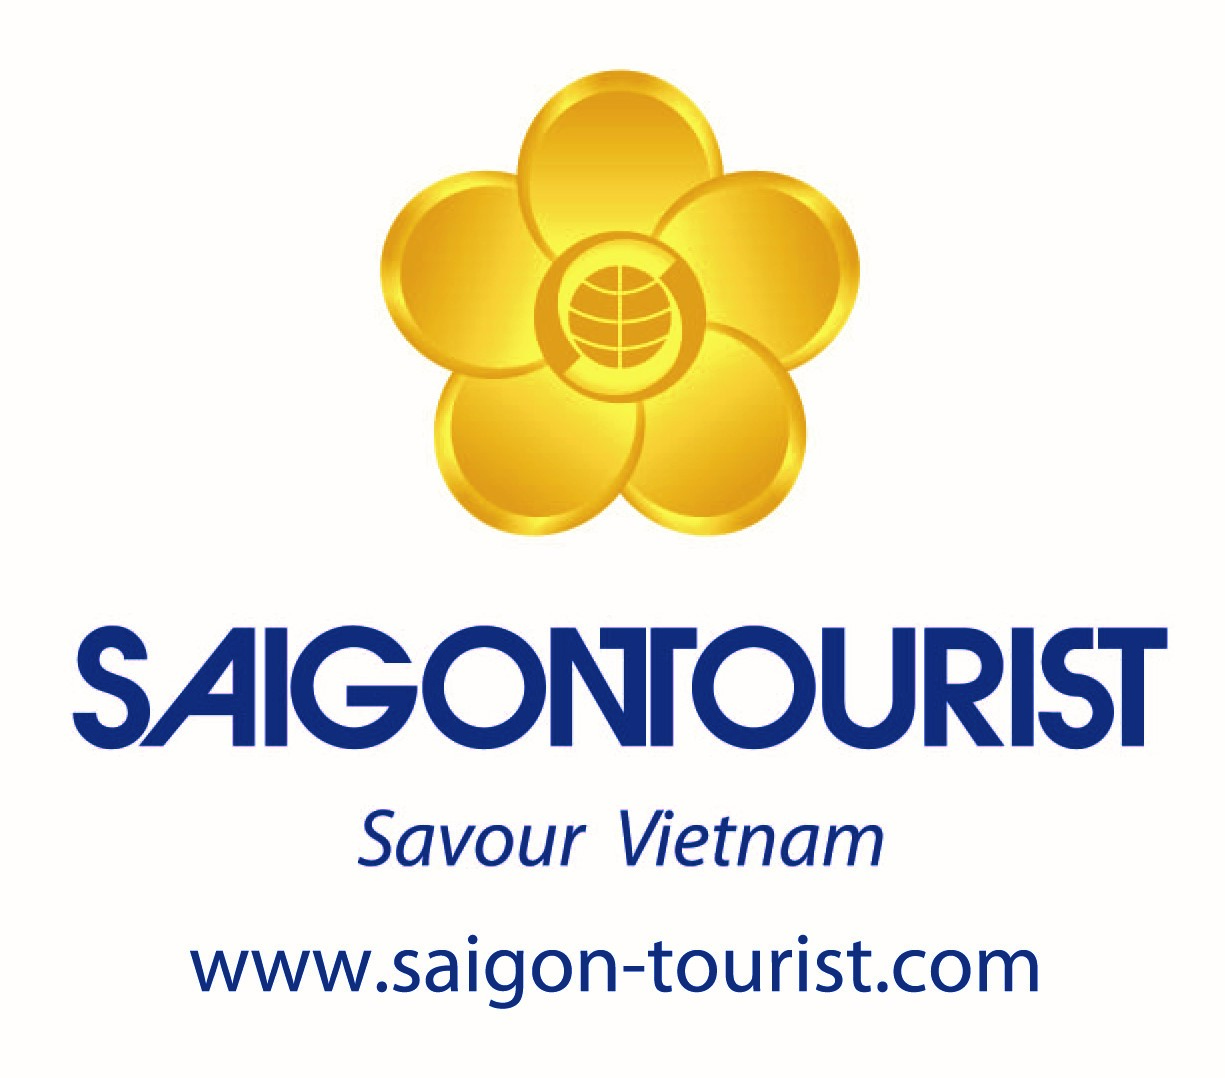 Un nouveau logo pour Saigontourist